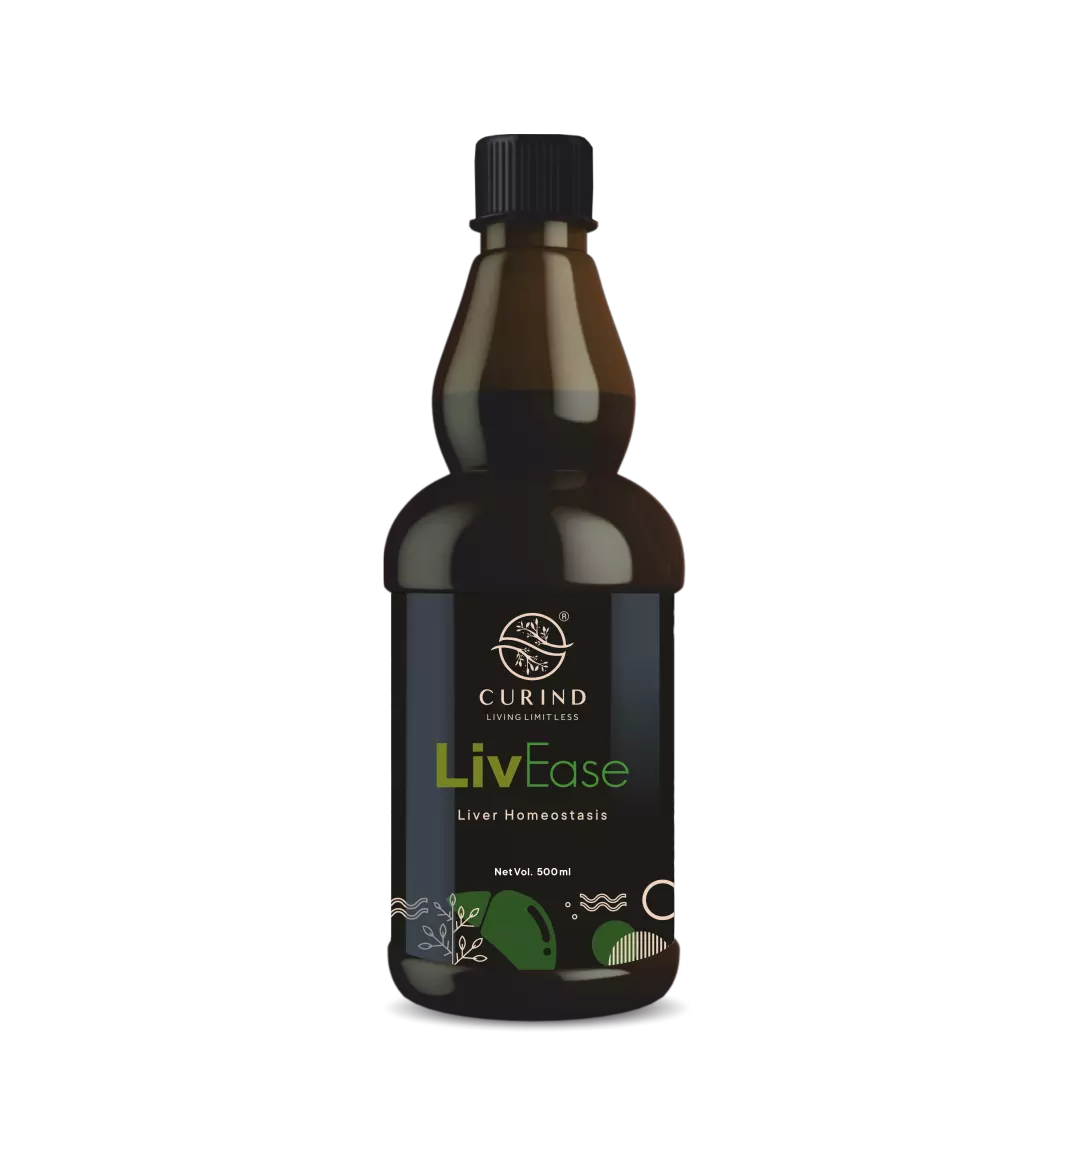 LivEase- best syrup for liver homeostatis